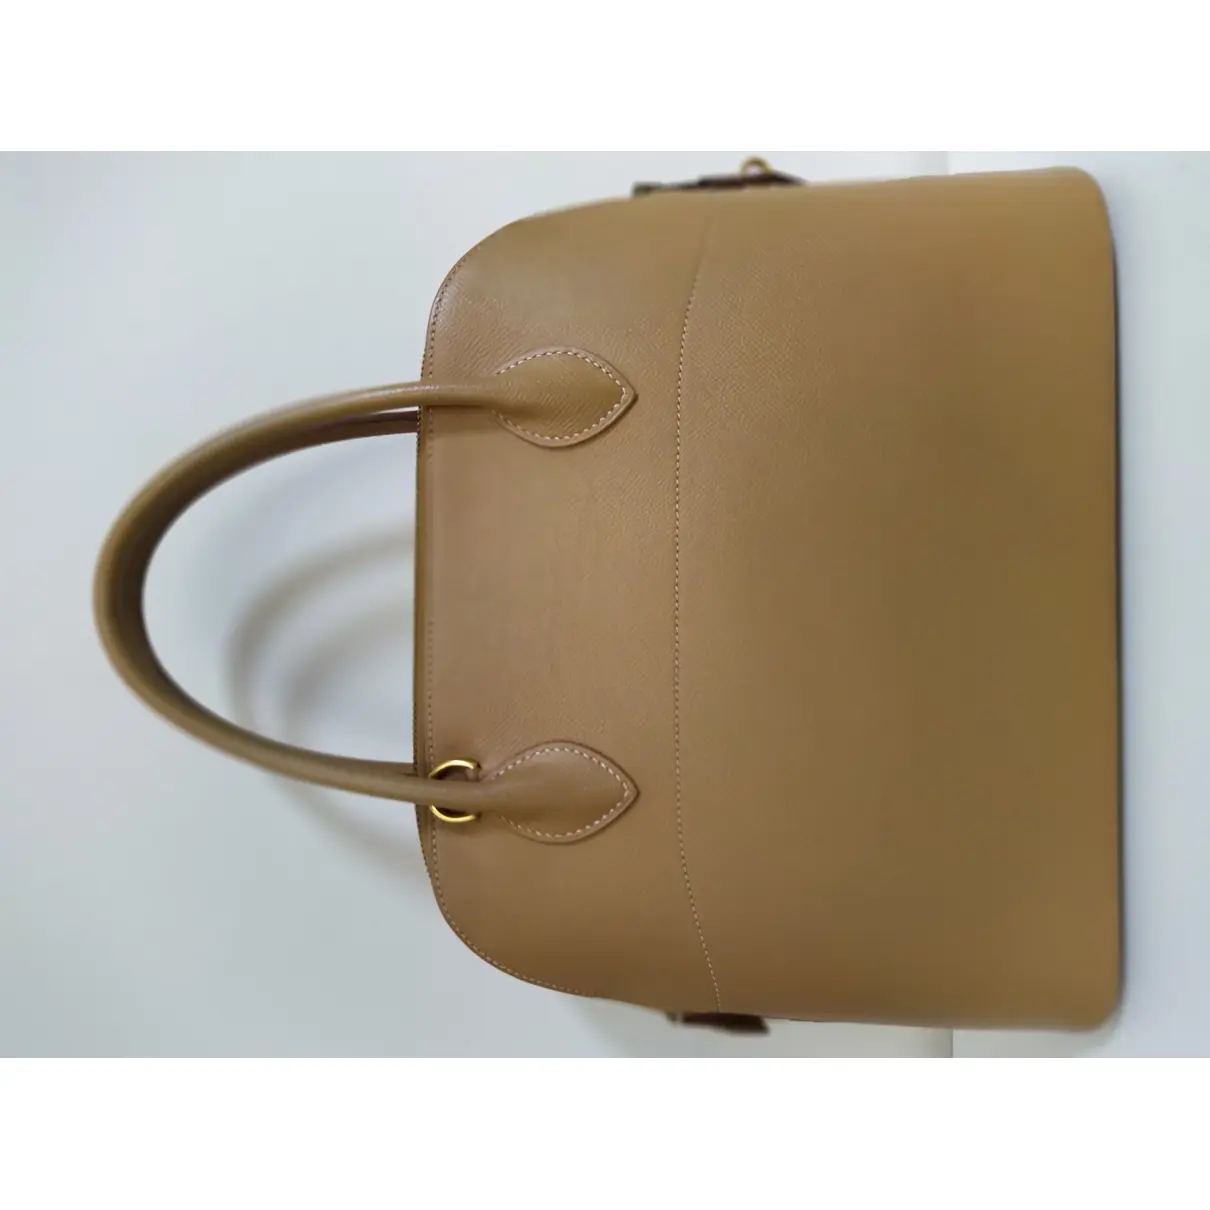 Bolide leather handbag Hermès - Vintage